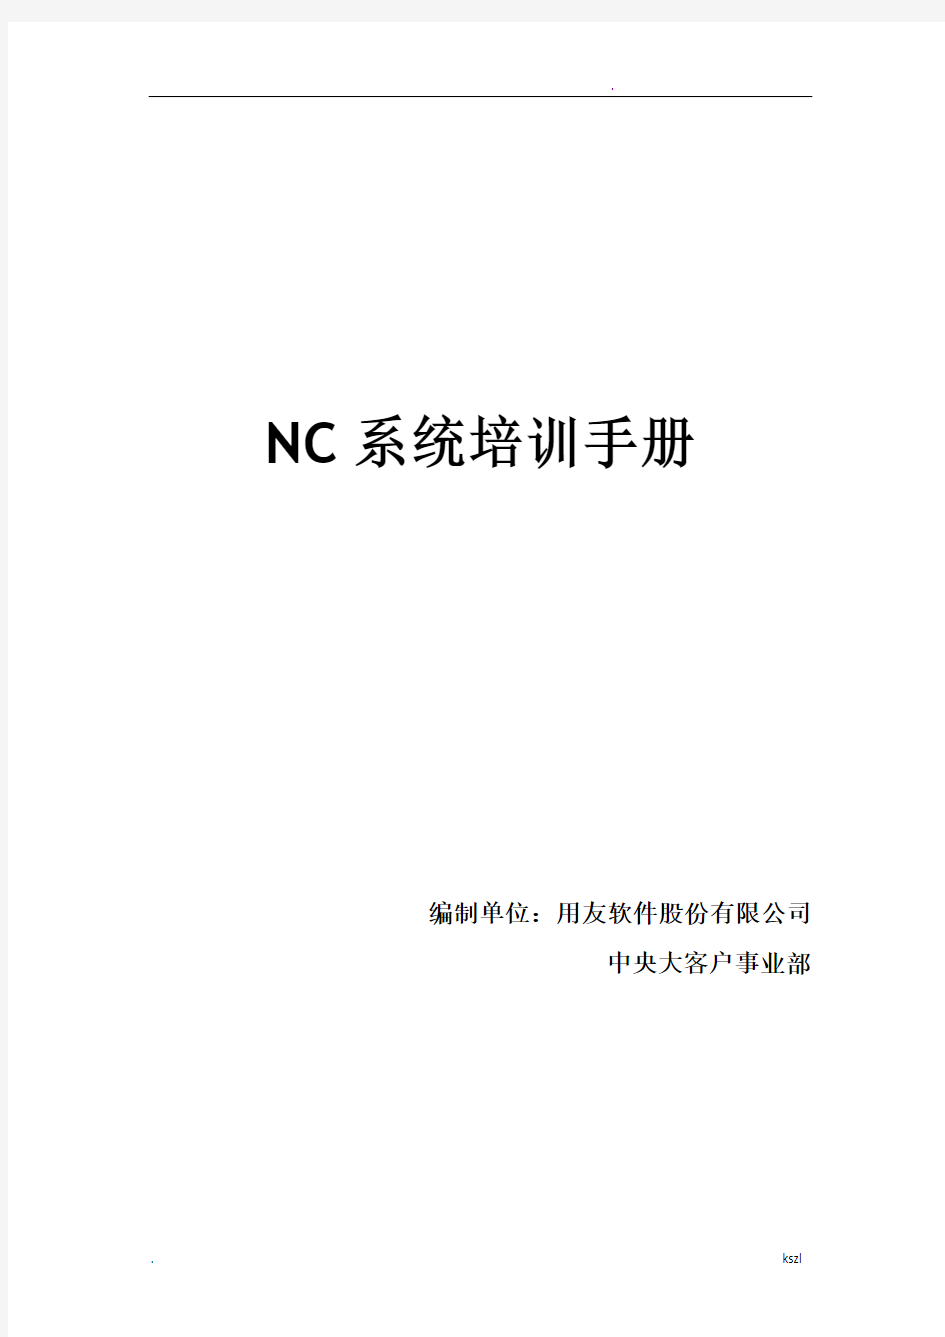 用友NC财务信息系统操作手册(全)